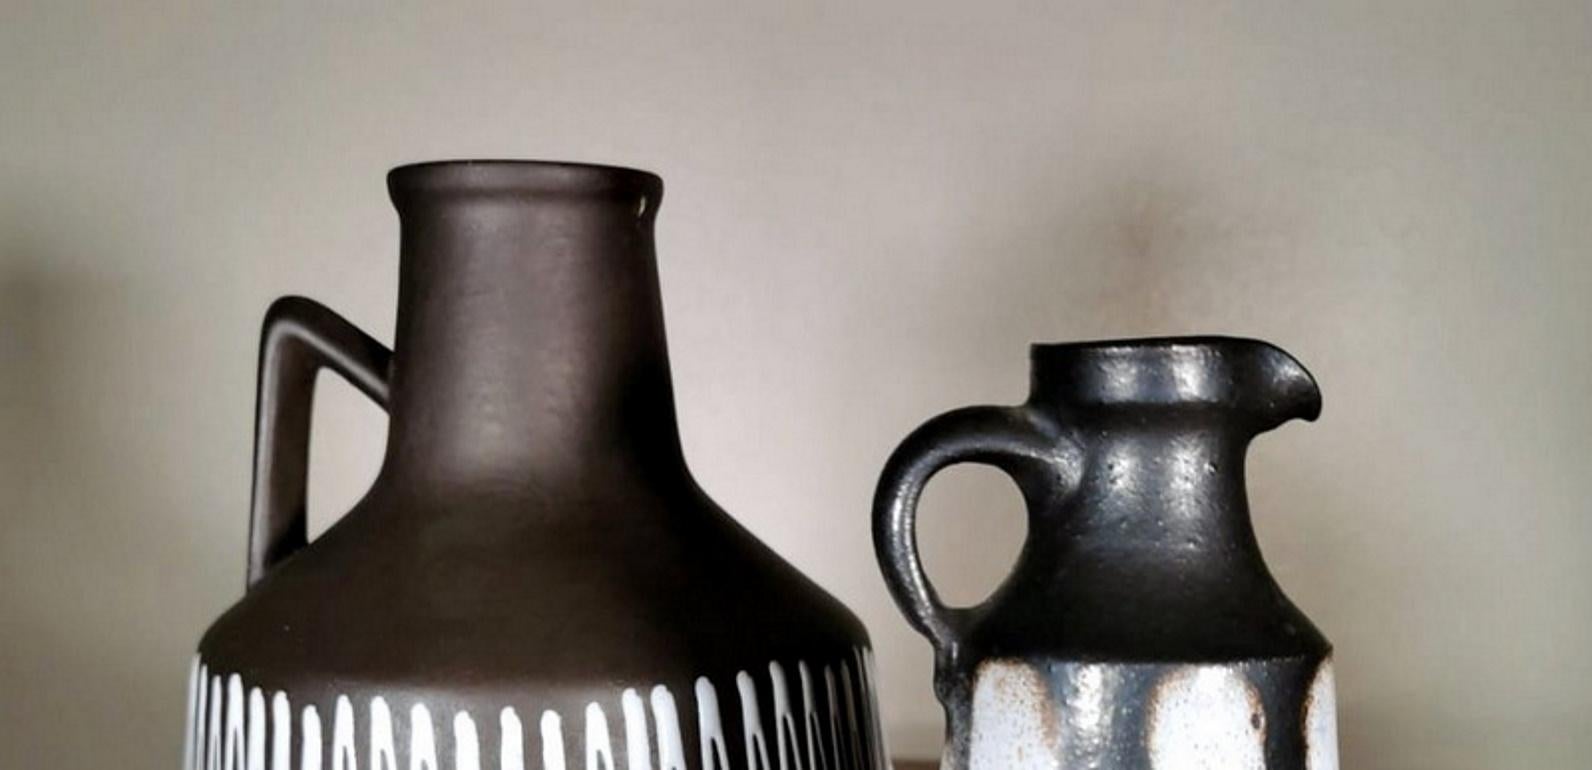 Fired Elma Keramik Pair of Ceramic Jugs, Germany